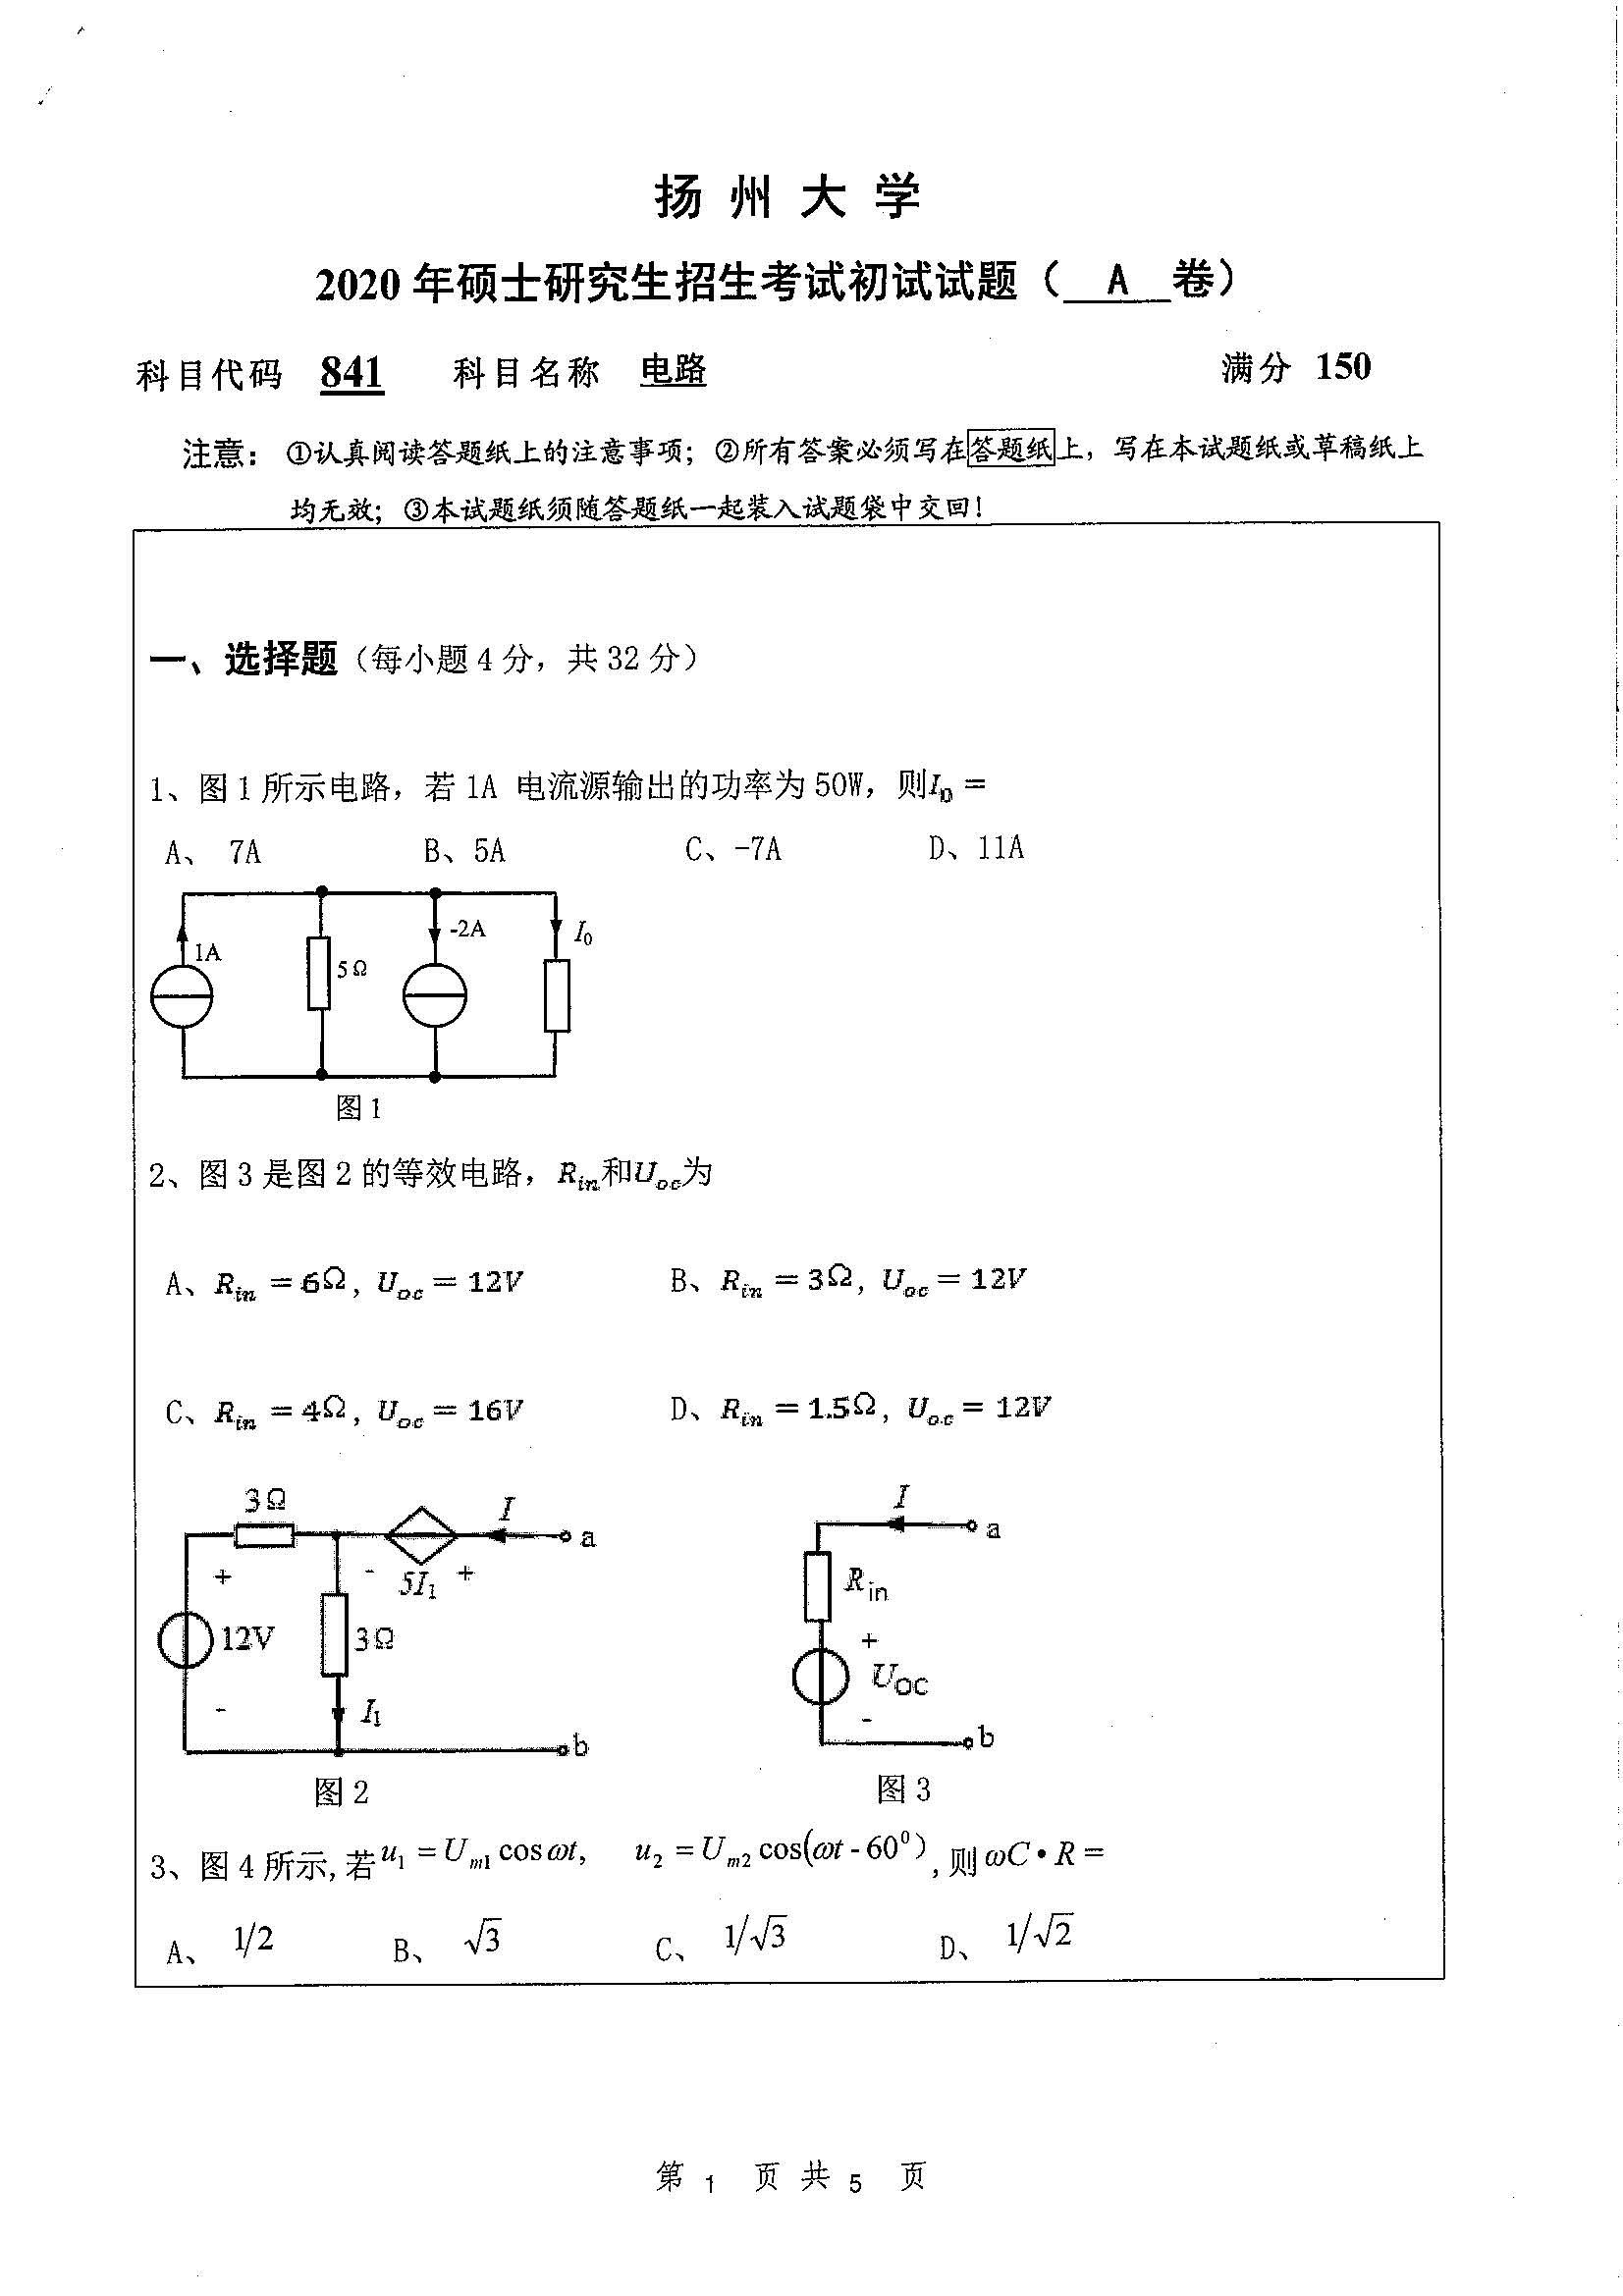 841-电路2020年考研初试试卷真题（扬州大学）